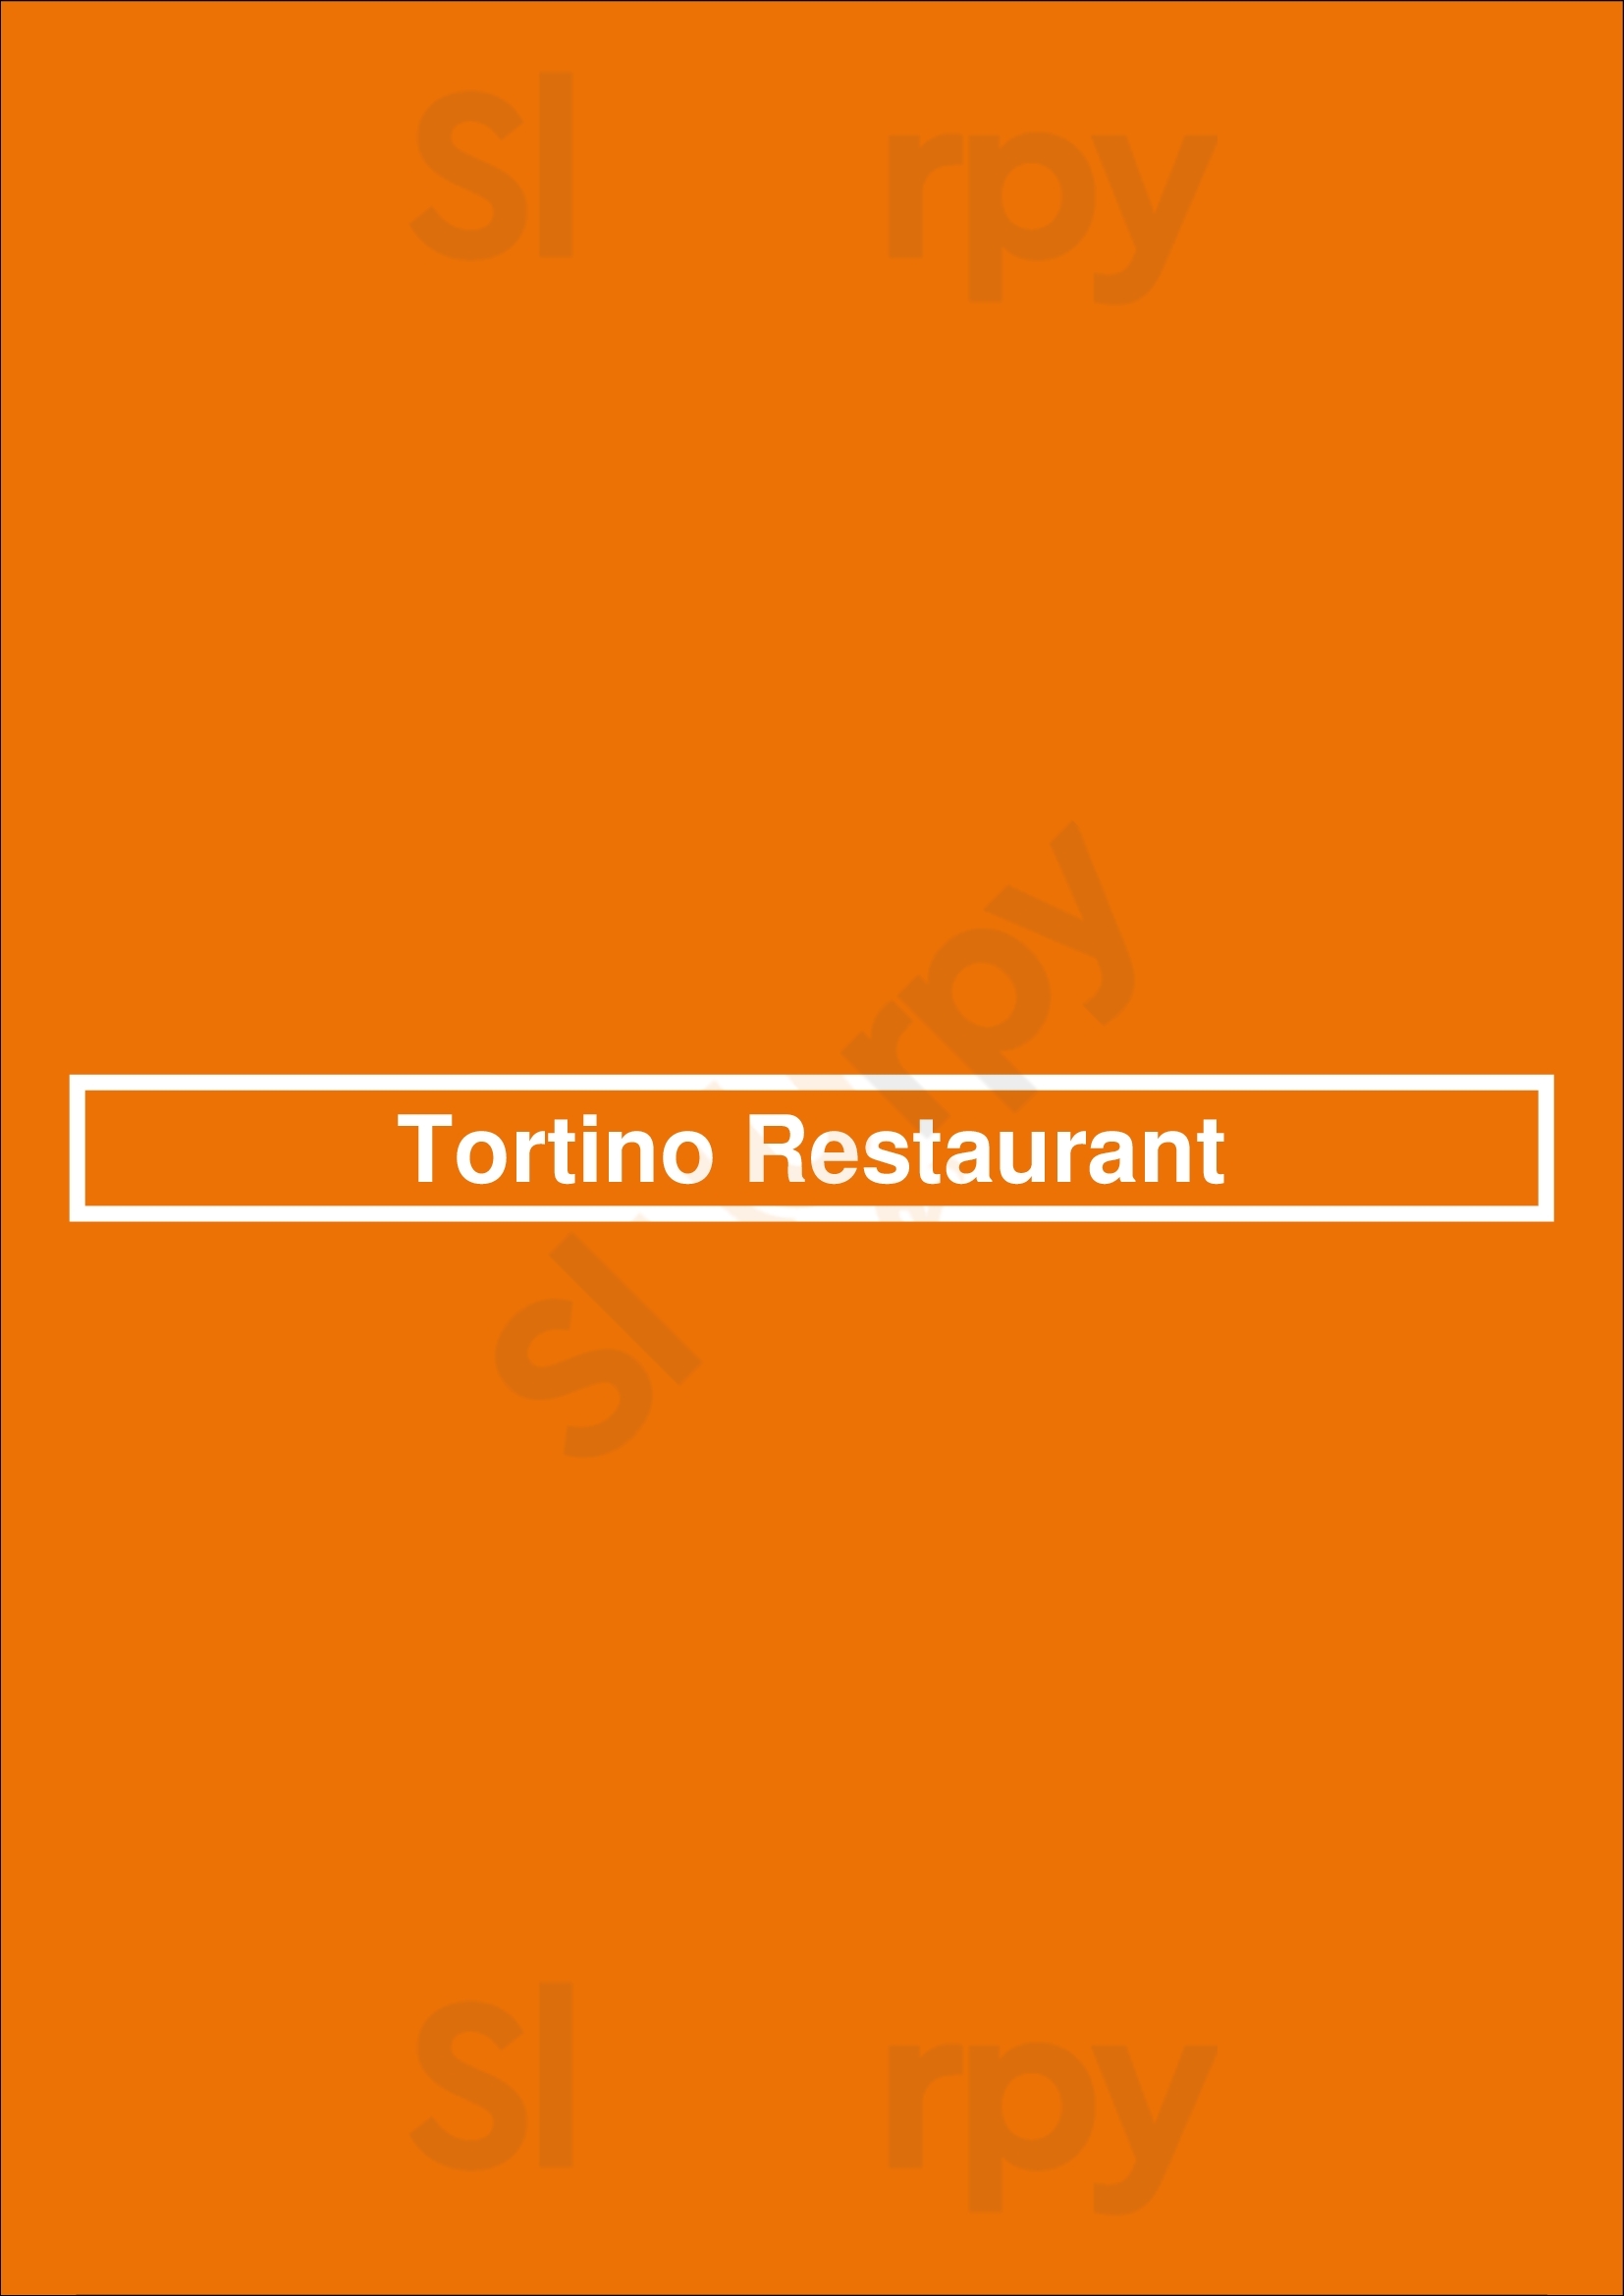 Tortino Restaurant Washington DC Menu - 1